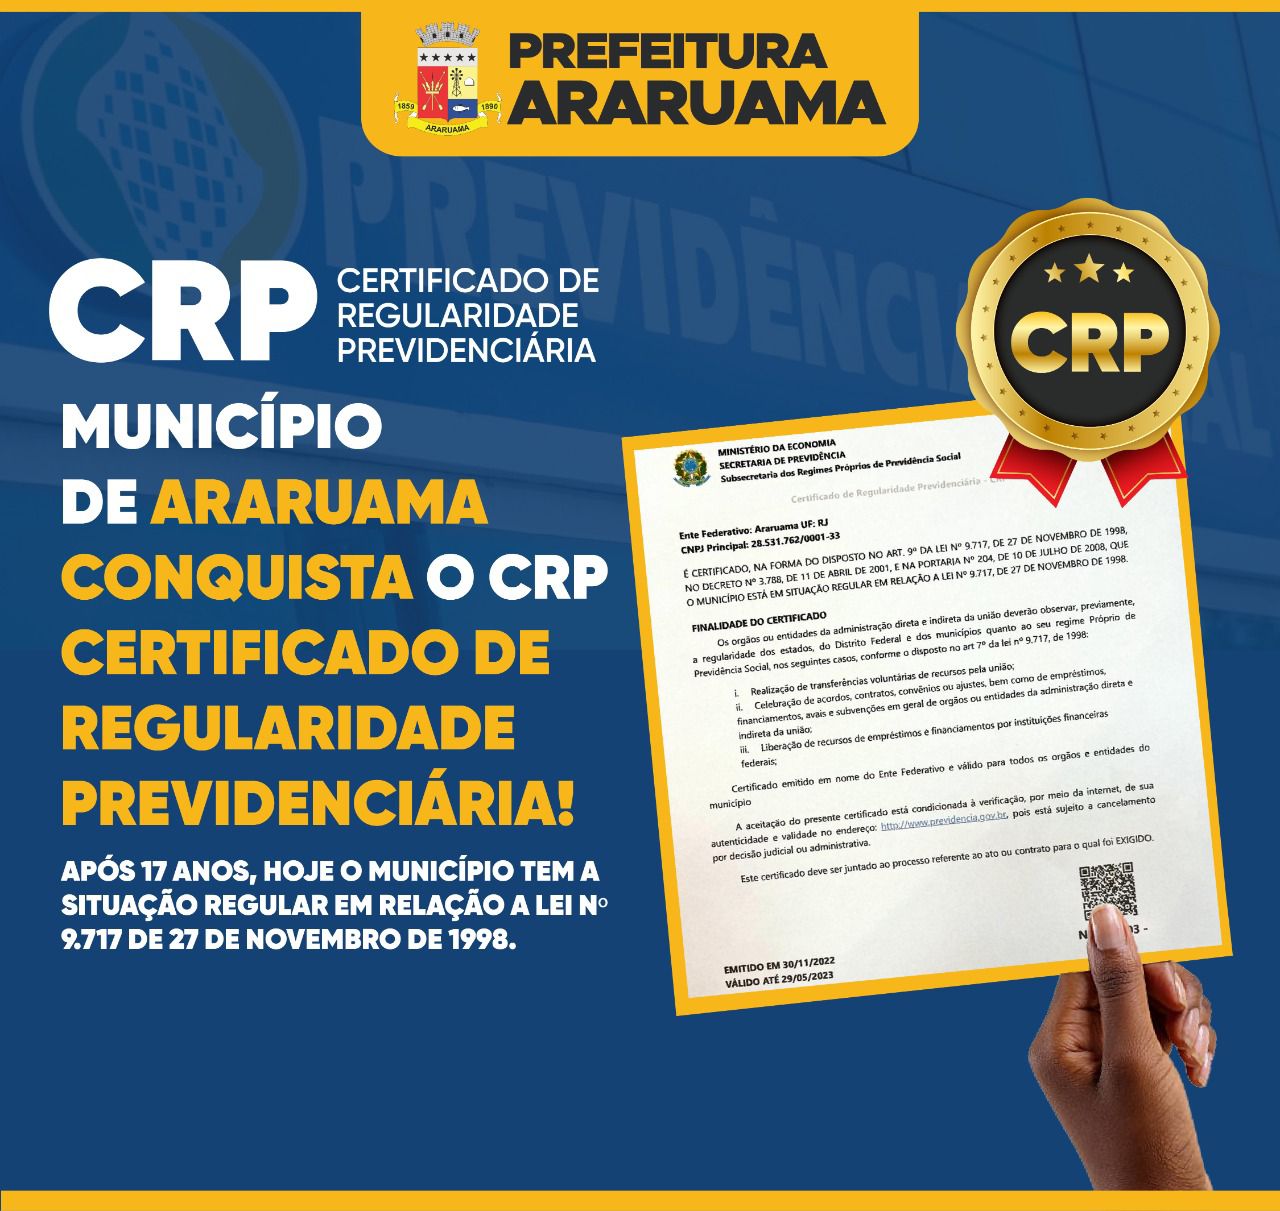 Prefeitura de Araruama conquista o tão esperado CRP “Certificado de Regularidade Previdenciária”